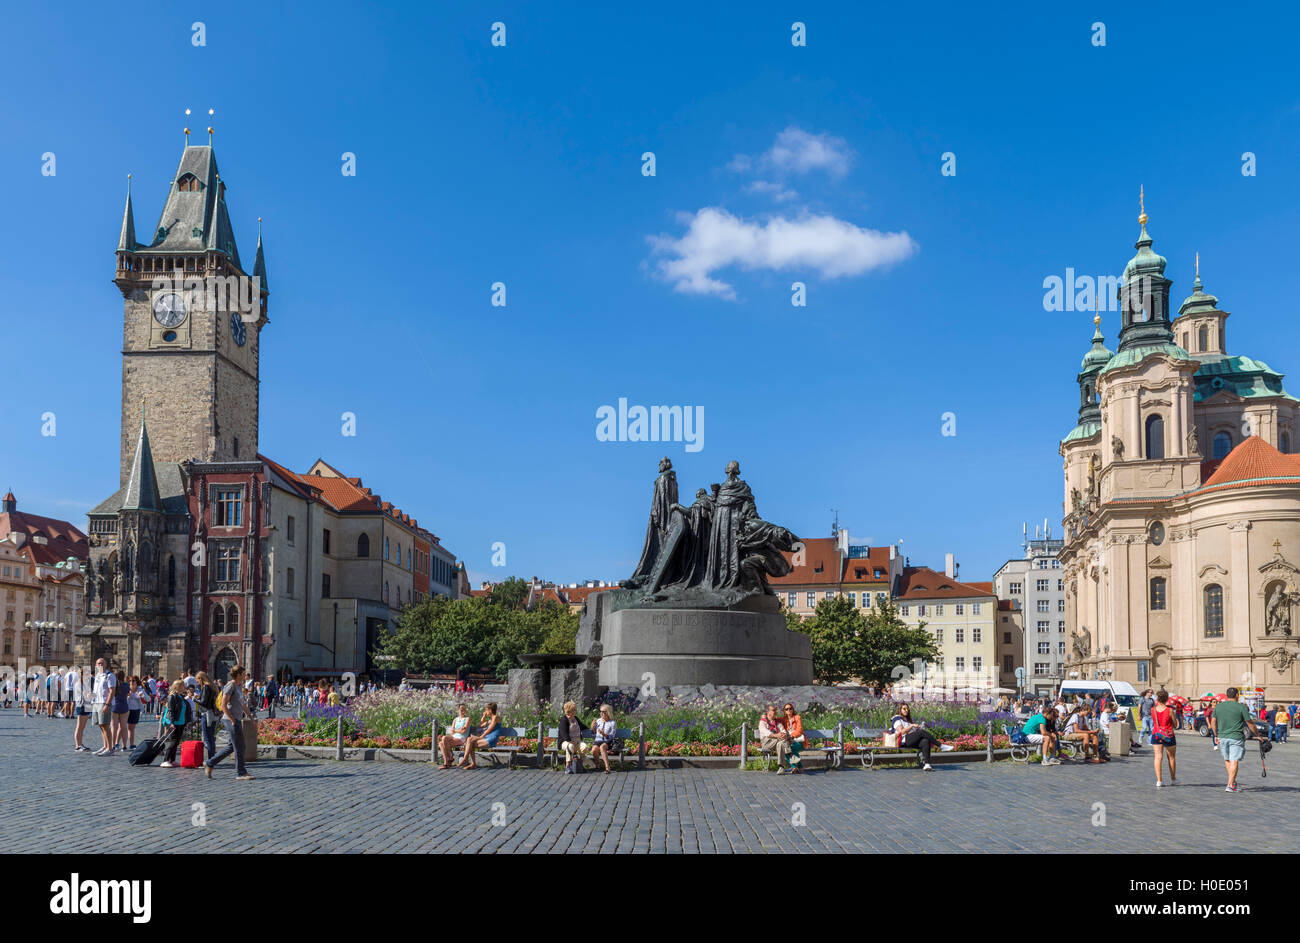 Old Town Square (Staroměstské náměstí), with Old Town Hall, Jan Hus statue and St Nicholas' Church, Staré Město, Prague, CZ Stock Photo